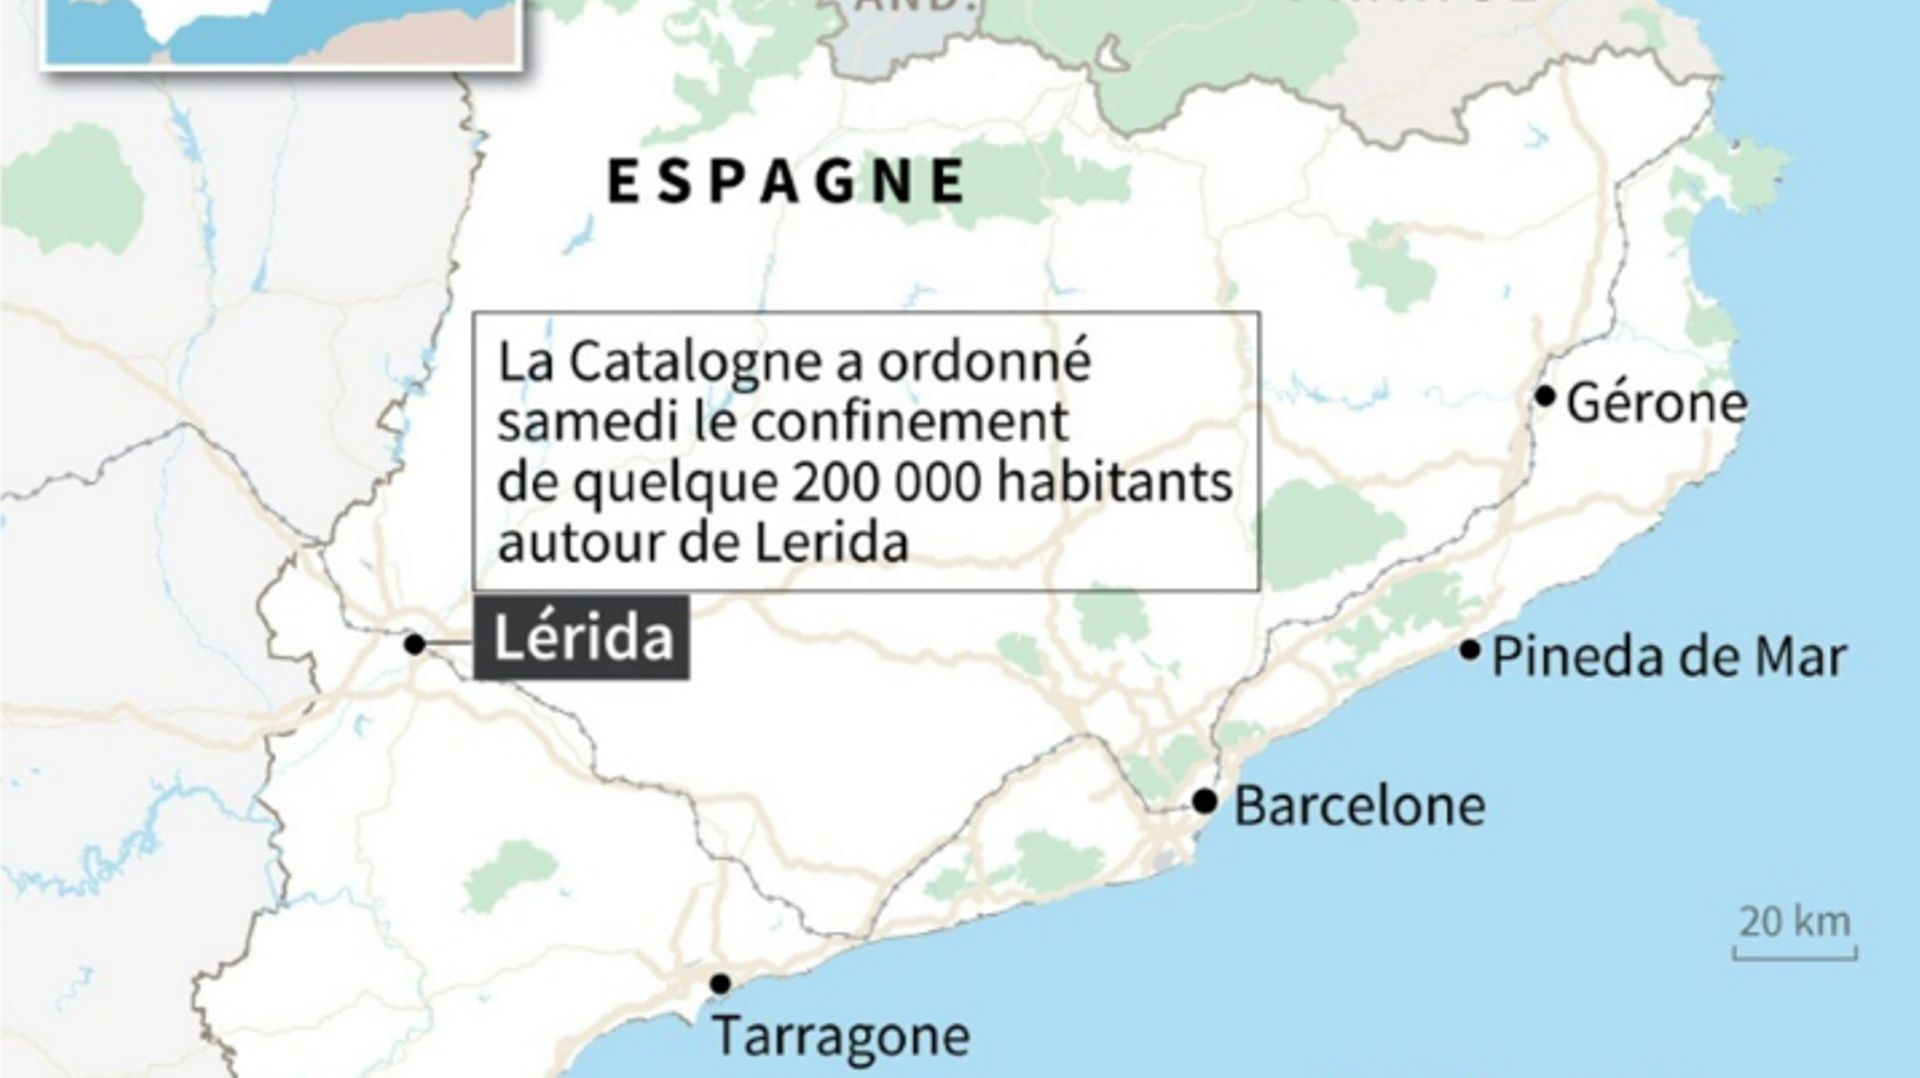 Coronavirus en Espagne : la Catalogne reconfine quelque 200.000 personnes